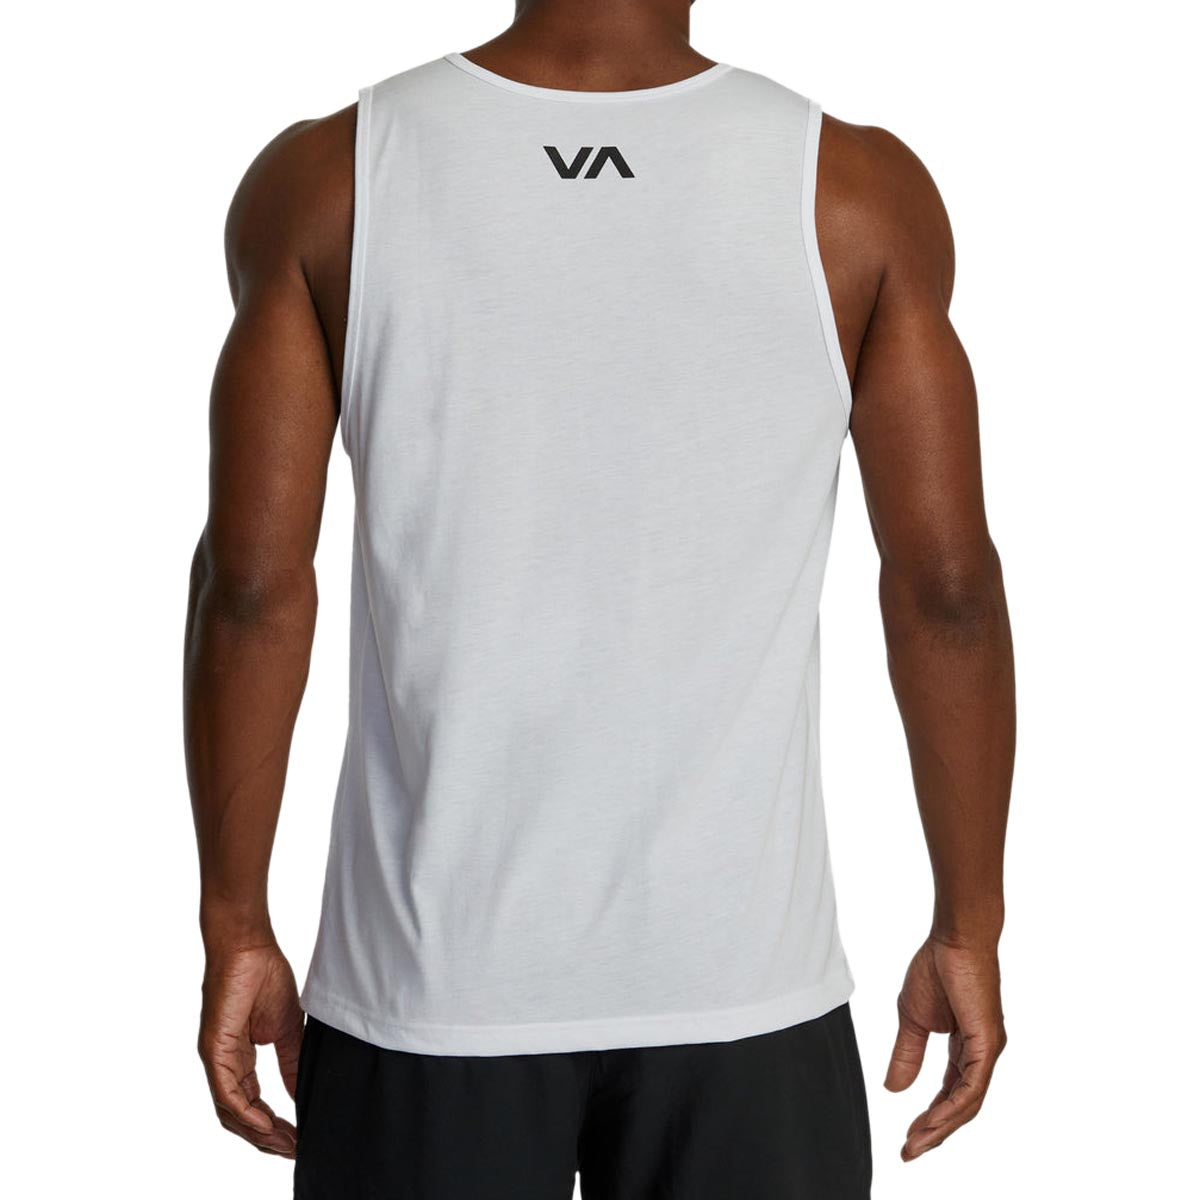 RVCA VA Blur Tank Top - New White image 4